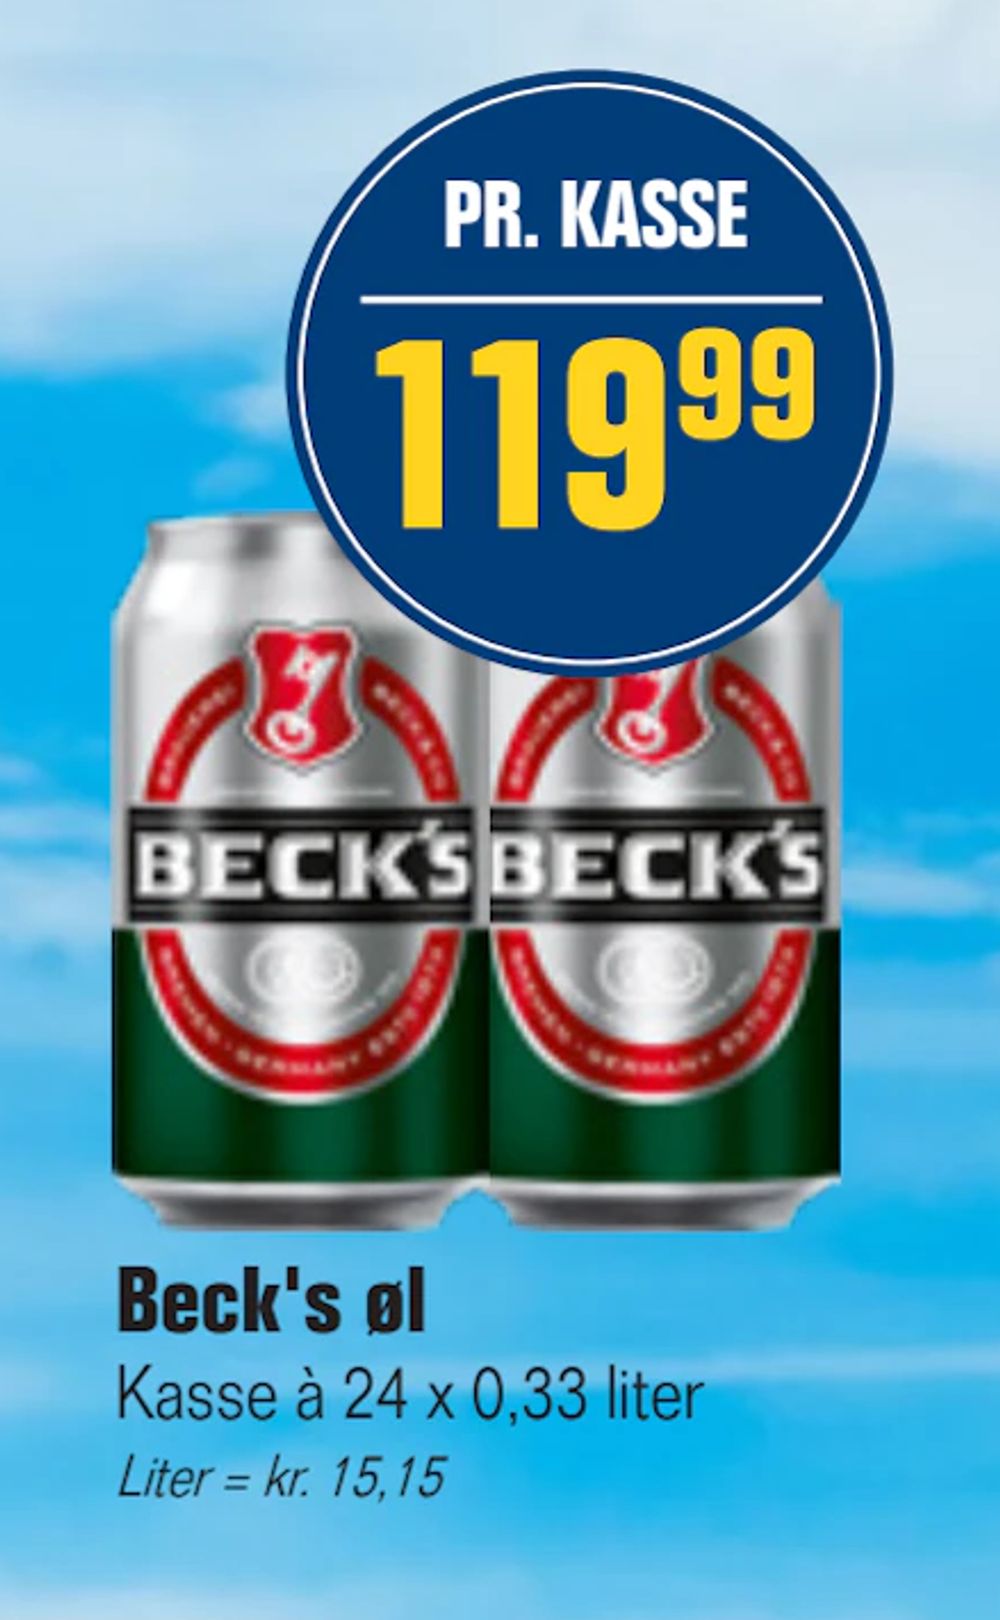 Tilbud på Beck's øl fra Otto Duborg til 119,99 kr.